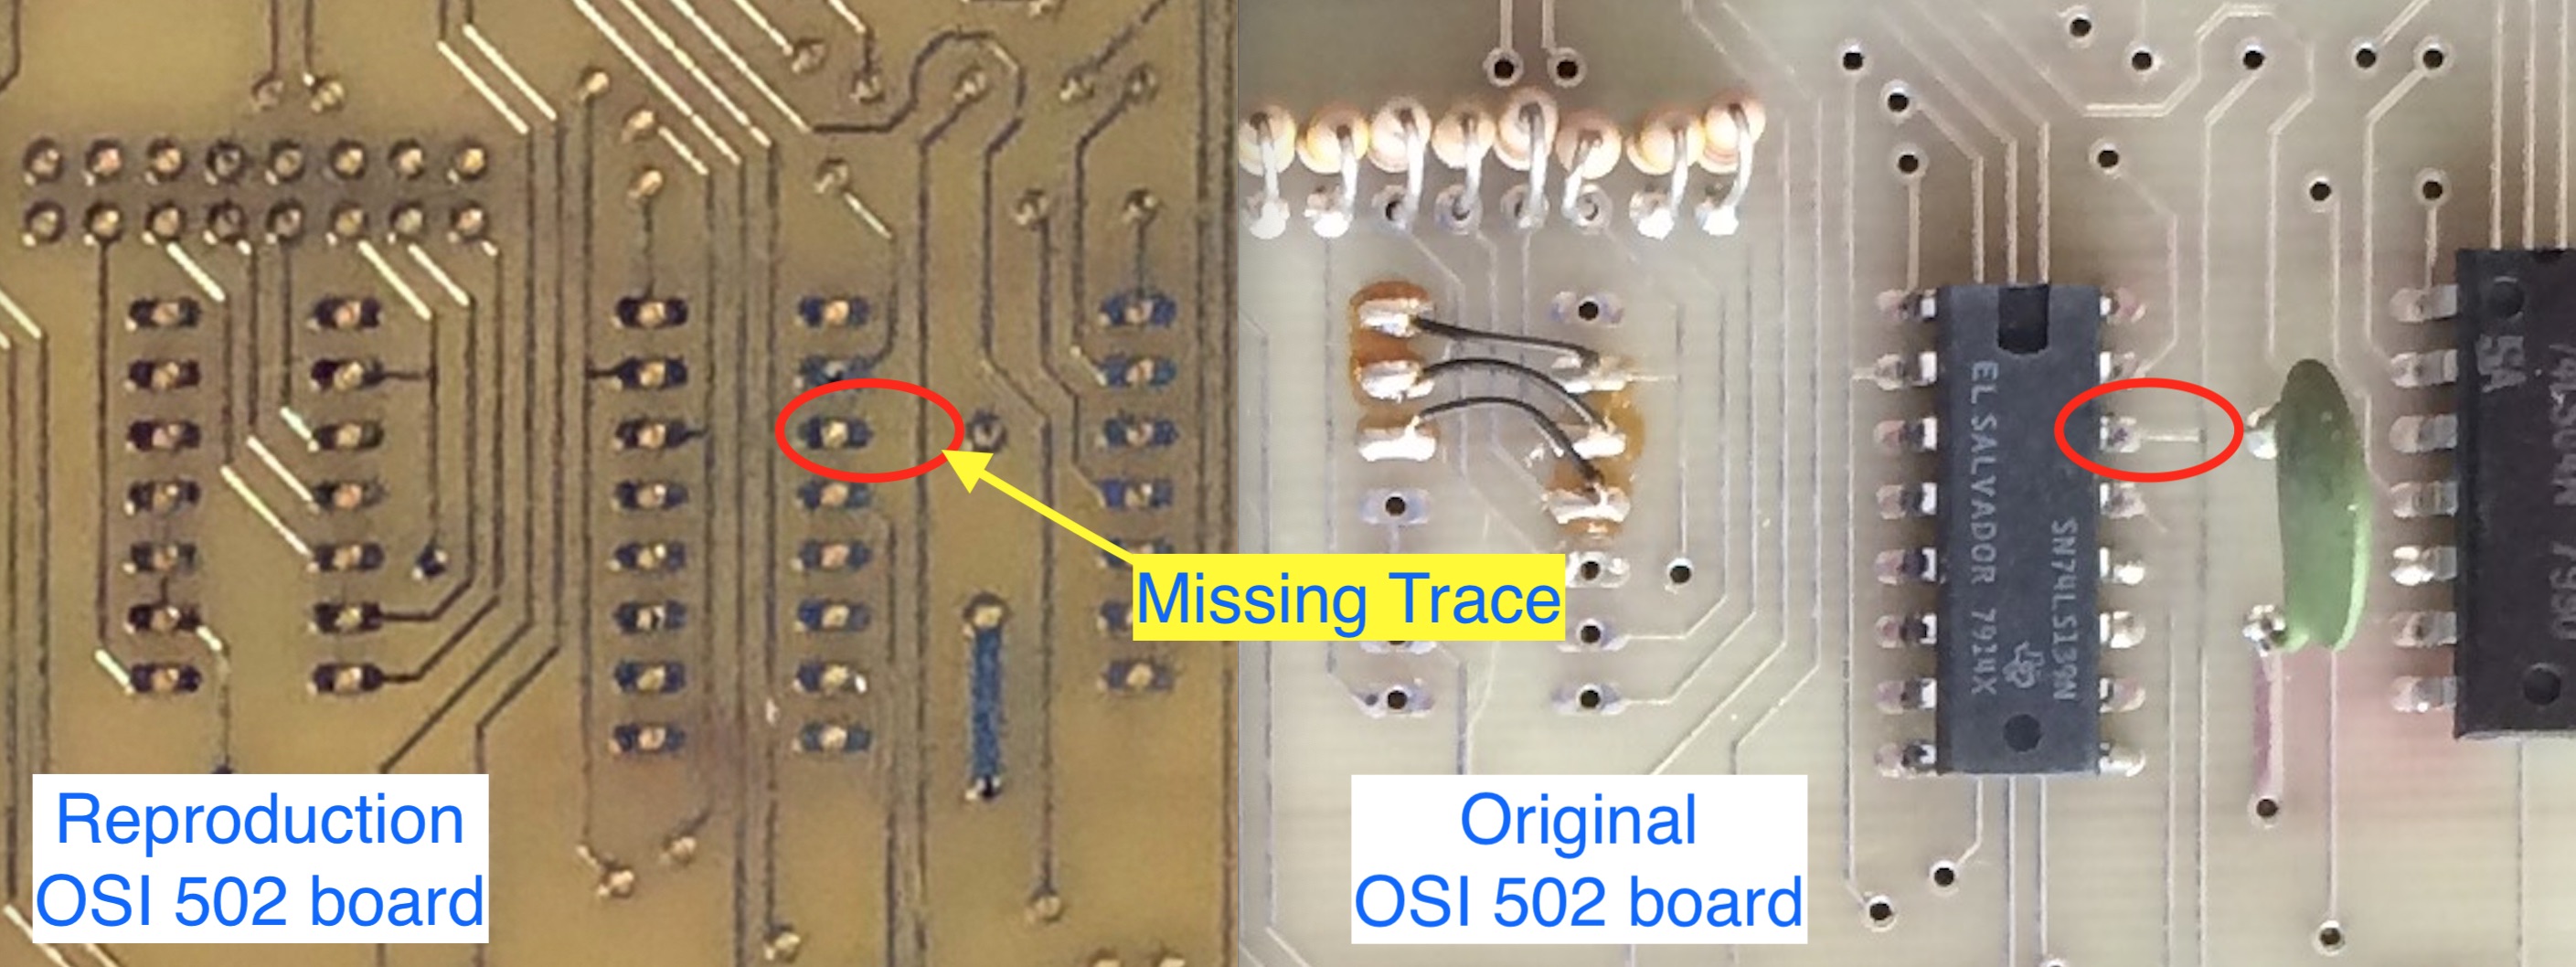 Missing Trace on 502 board.jpg